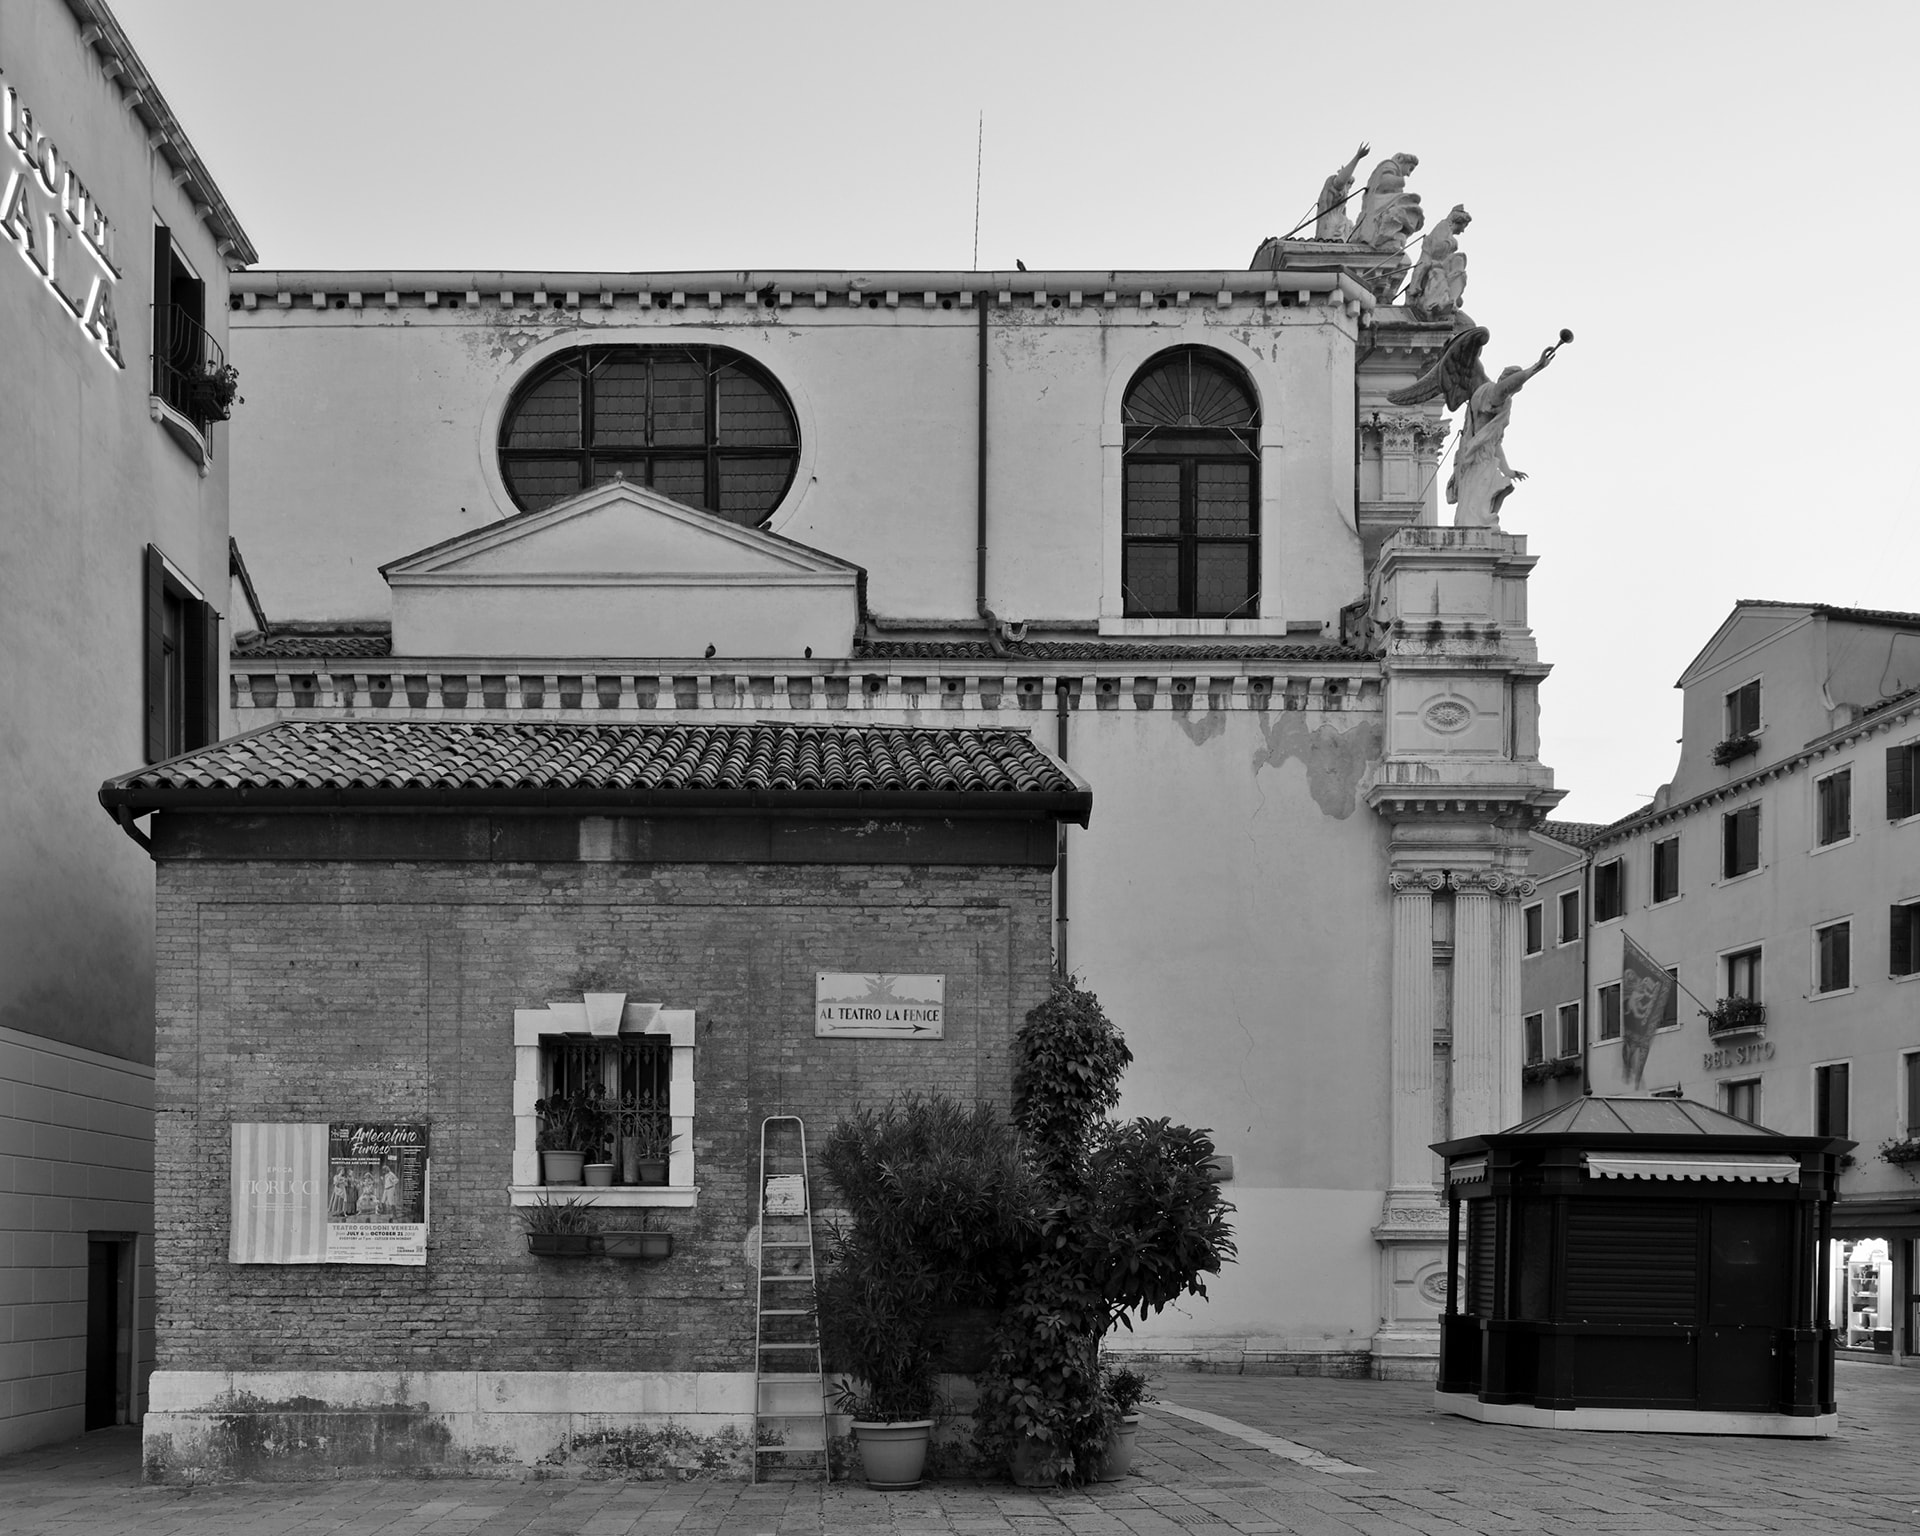 San Marco, Campo Santa Maria Zobenigo o del Giglio, 2018. Venice Urban Photo Project / Mario Peliti